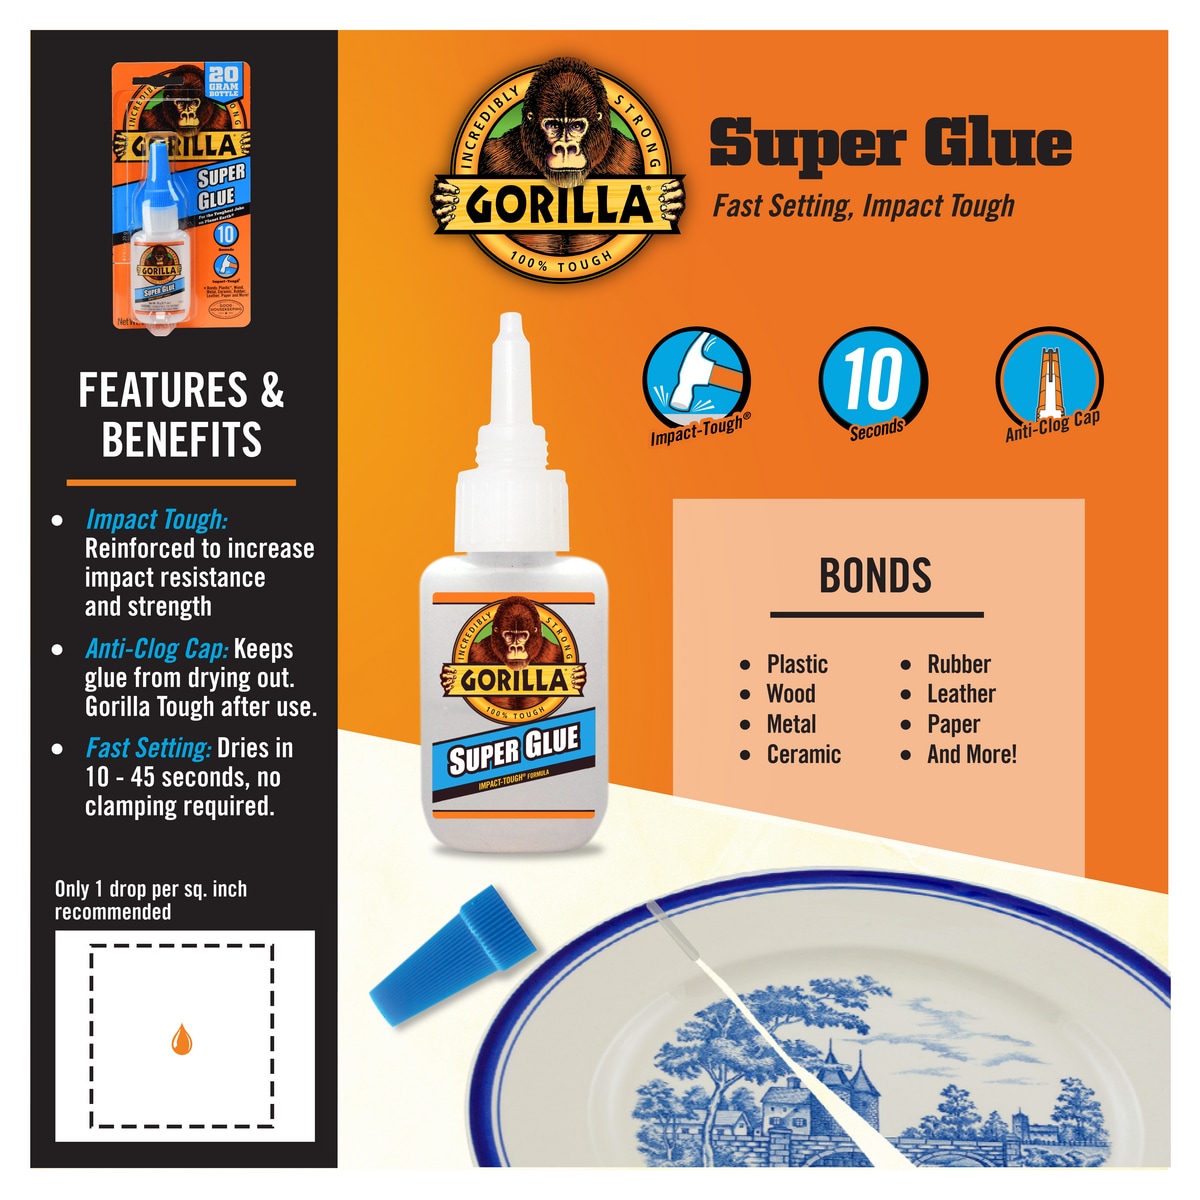 Gorilla Brush and Nozzle 12-gram Liquid Super Glue in the Super